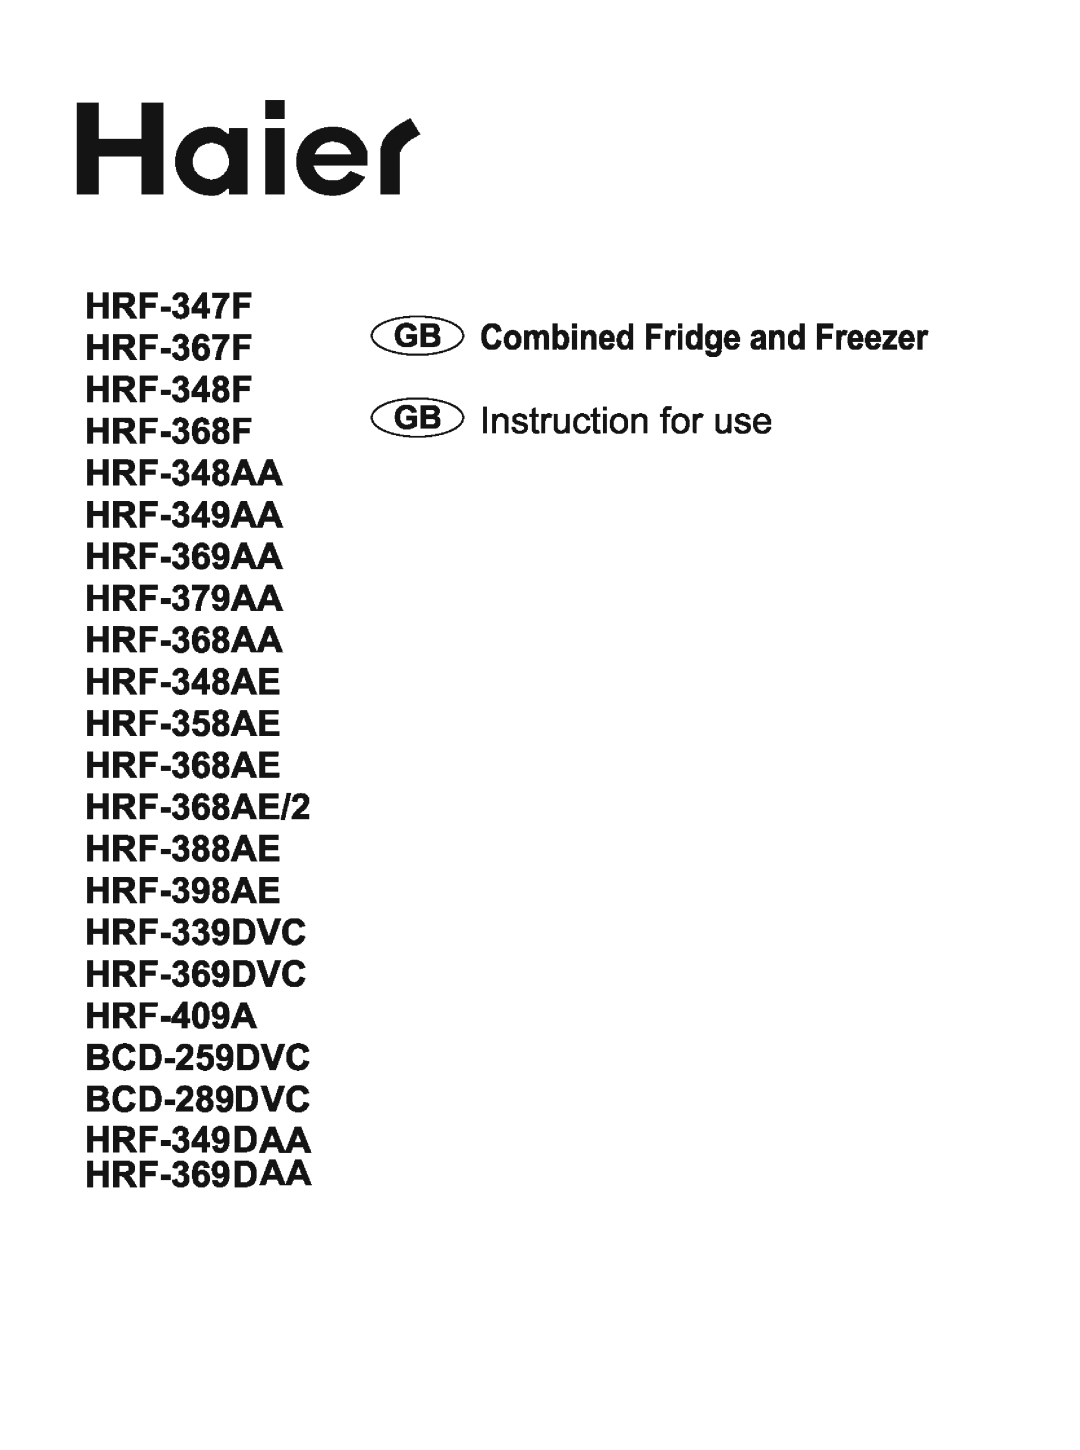 Haier HRF-398AE, HRF-388AE, HRF-368AE, HRF-347F, HRF-368AA, HRF-367F, HRF-348AE, HRF-379AA, HRF-358AE, HRF-348AA, HRF-348F manual 